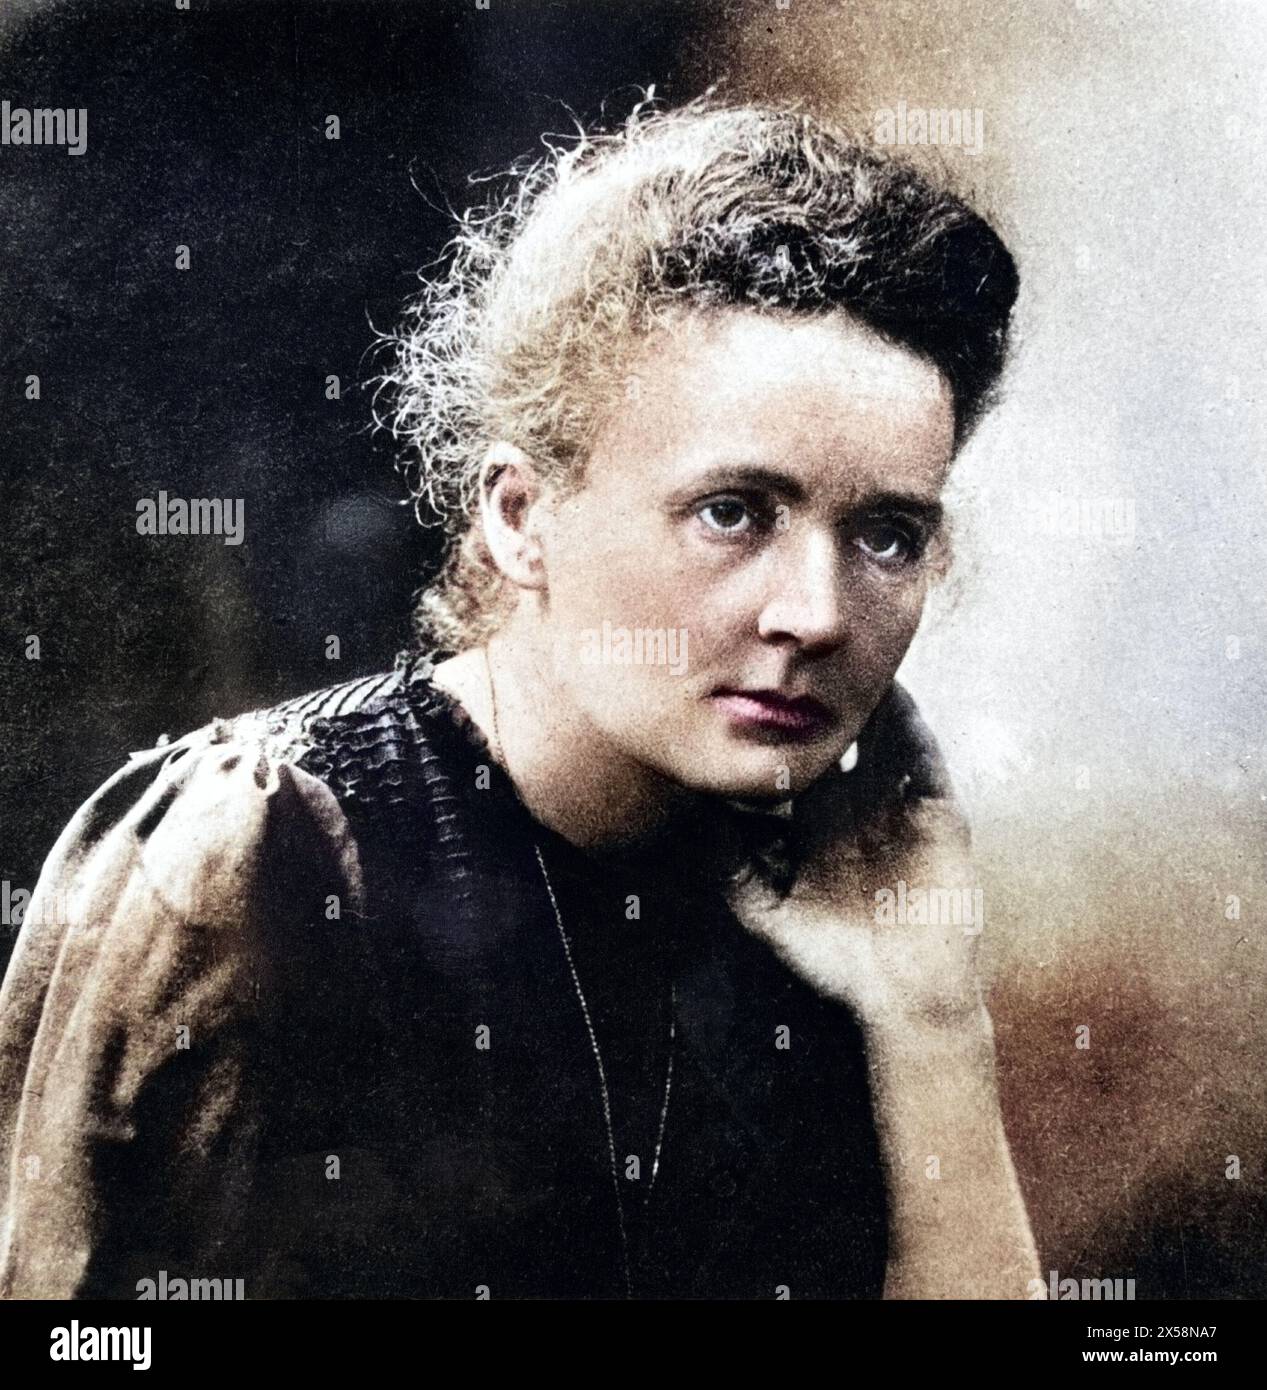 Curie, Marie, (eig. Marya Sklodowska), 7.11.1867 - 4.7.1934, Polish chemist, portrait, ADDITIONAL-RIGHTS-CLEARANCE-INFO-NOT-AVAILABLE Stock Photo